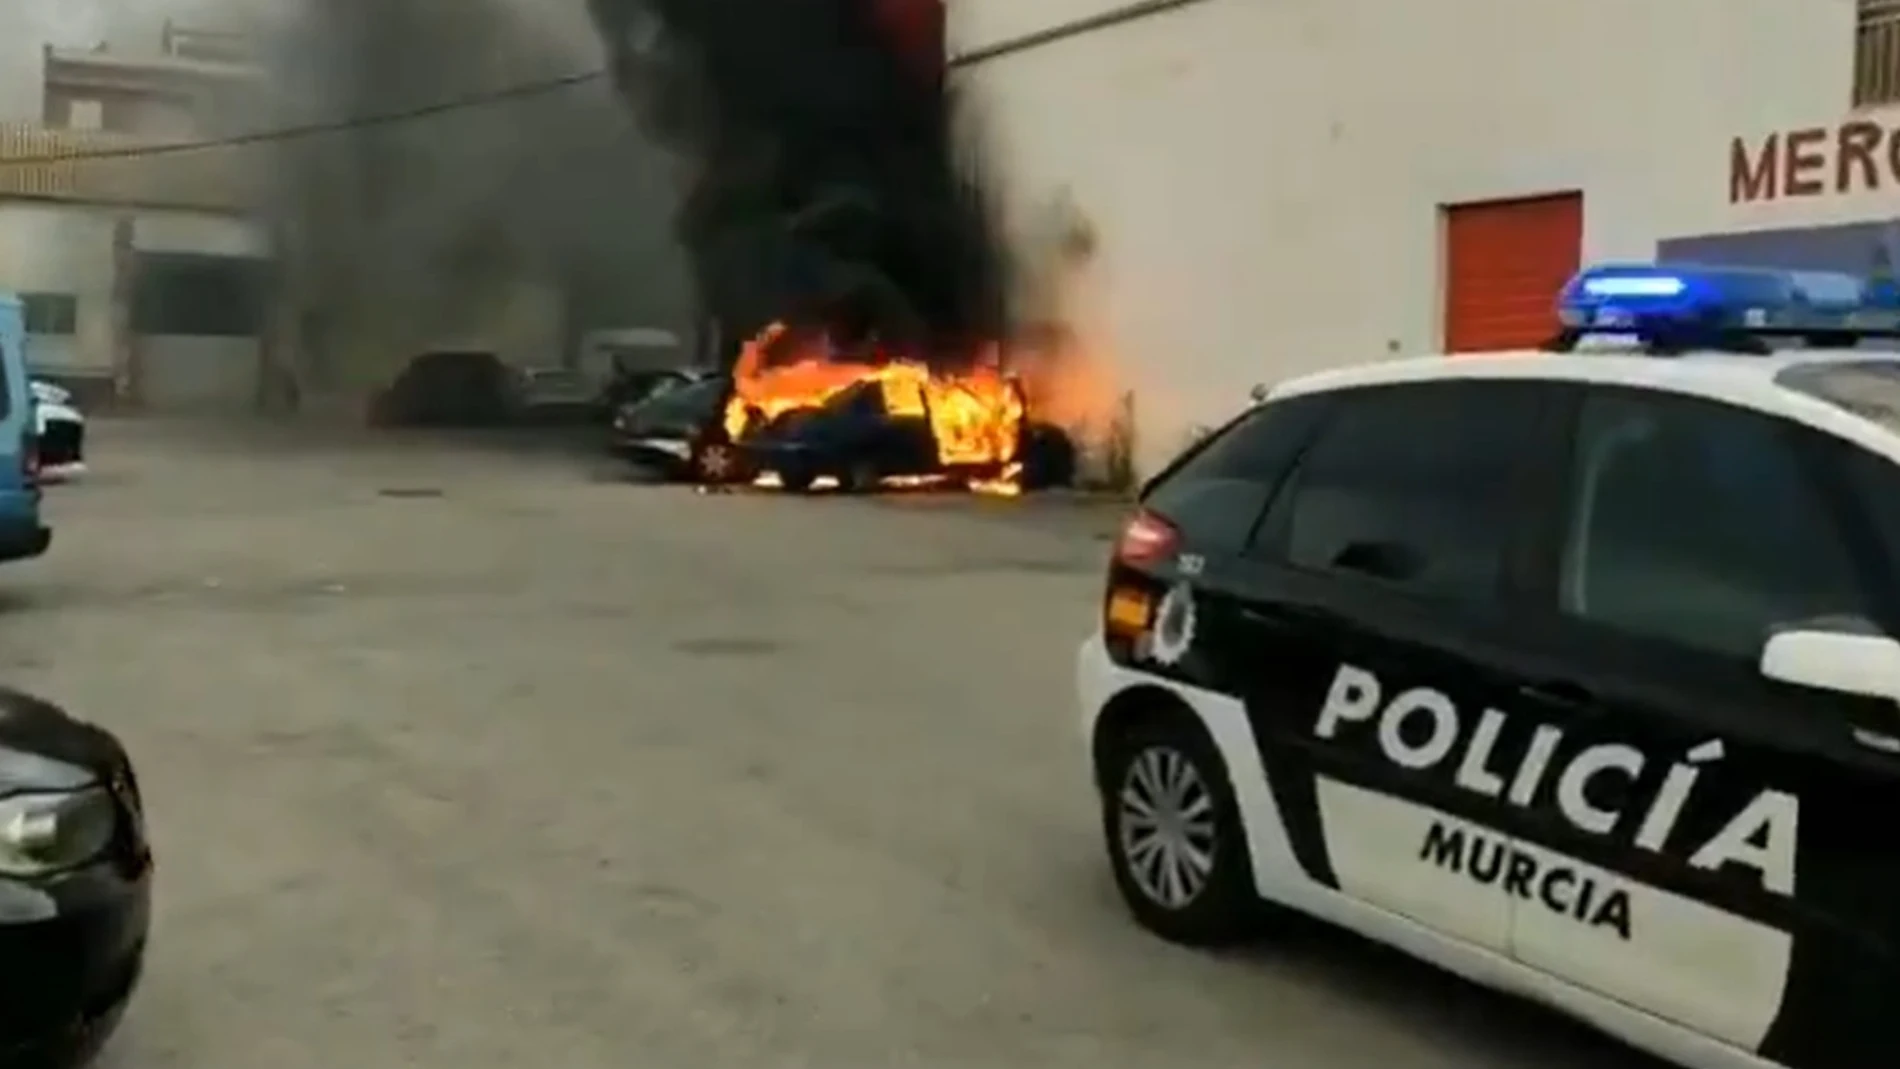 Arden tres vehículos estacionados junto a un supermercado en la pedanía murciana de El PalmarPOLICÍA LOCAL DE MURCIA24/09/2020